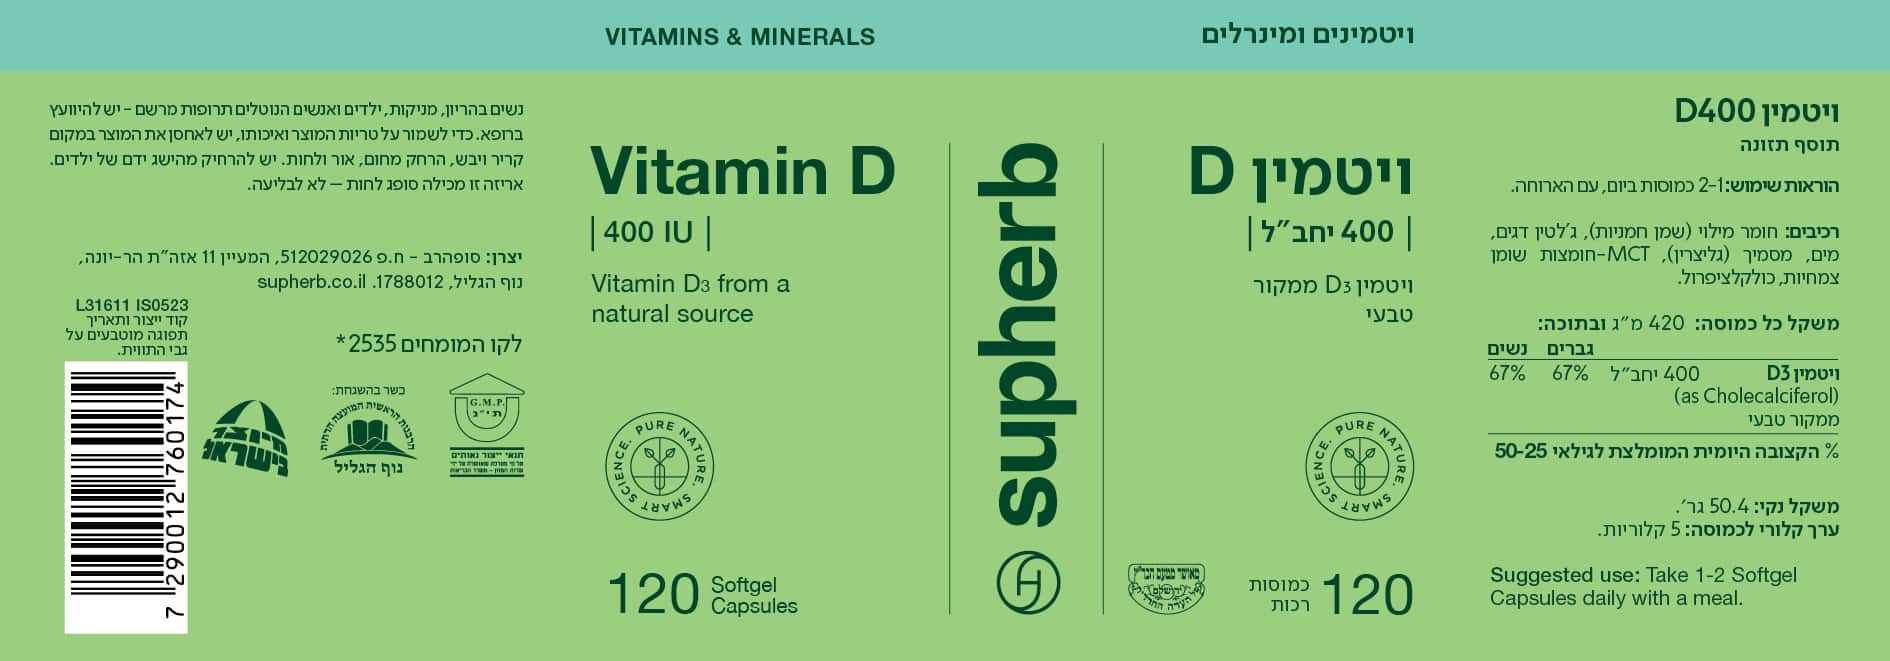 ויטמין D במינון 400 יחב"ל